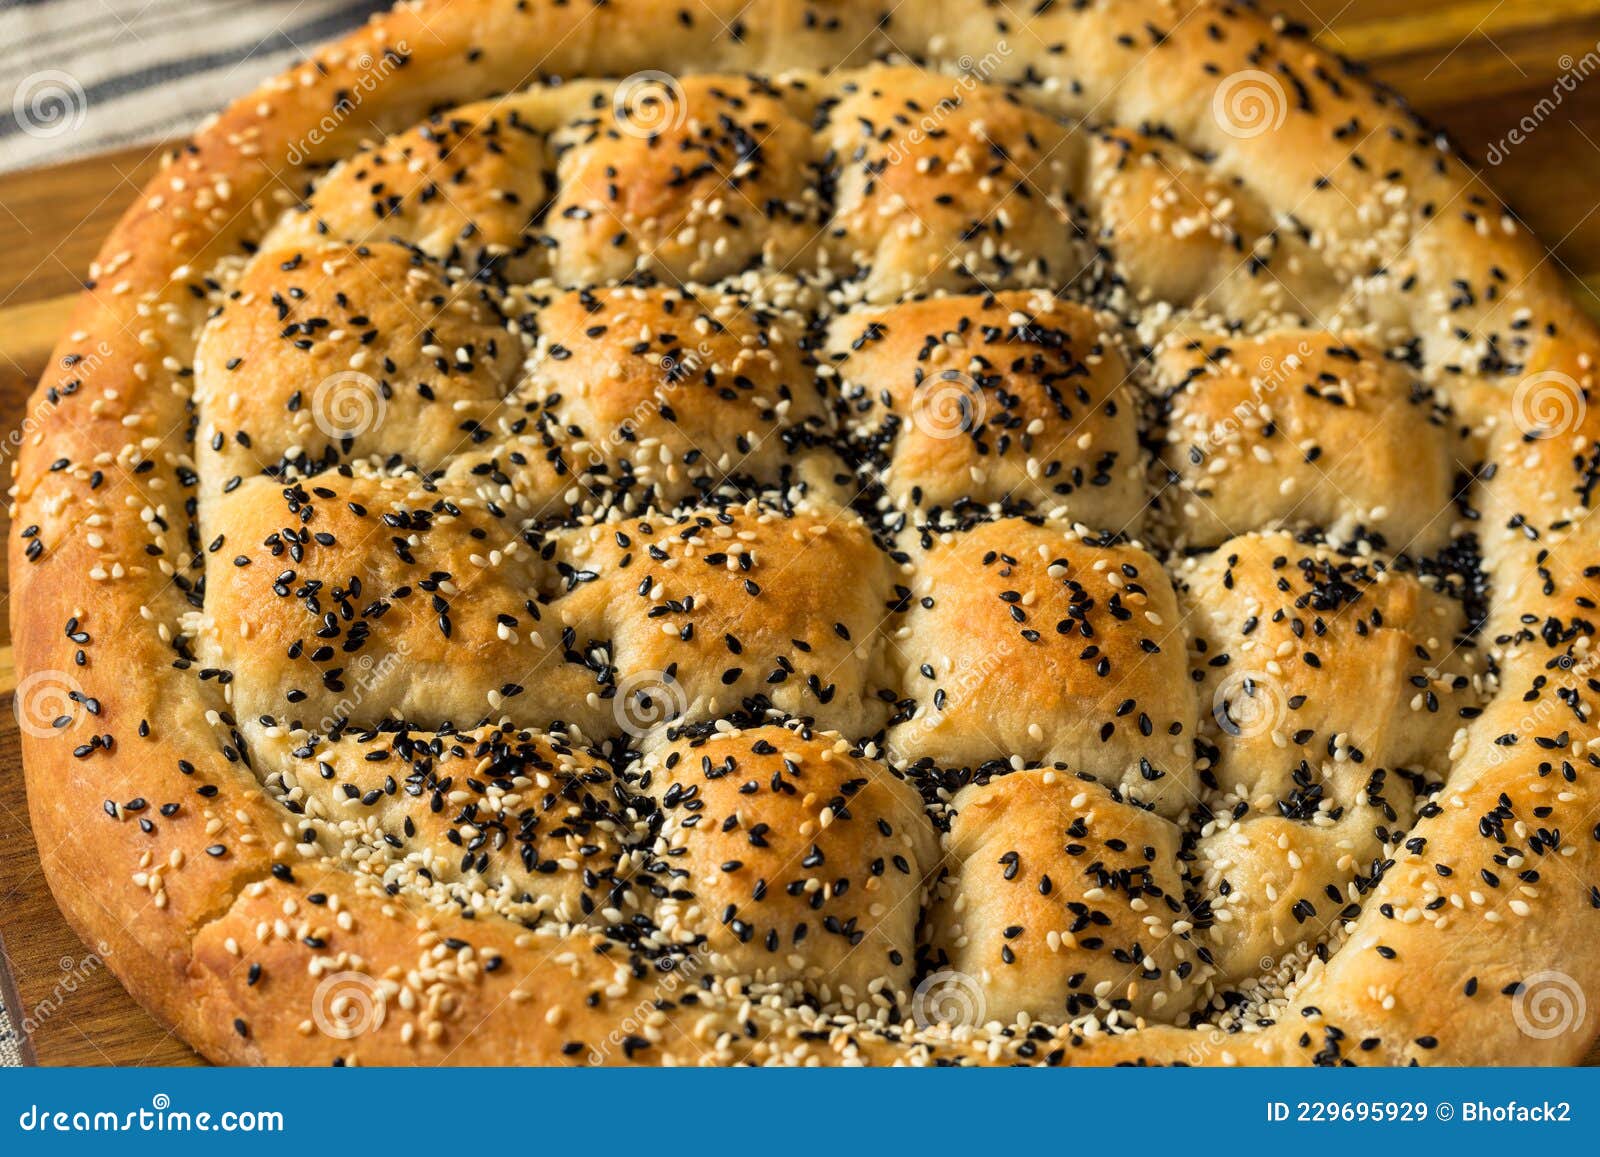 土耳其传统美食——面包圈